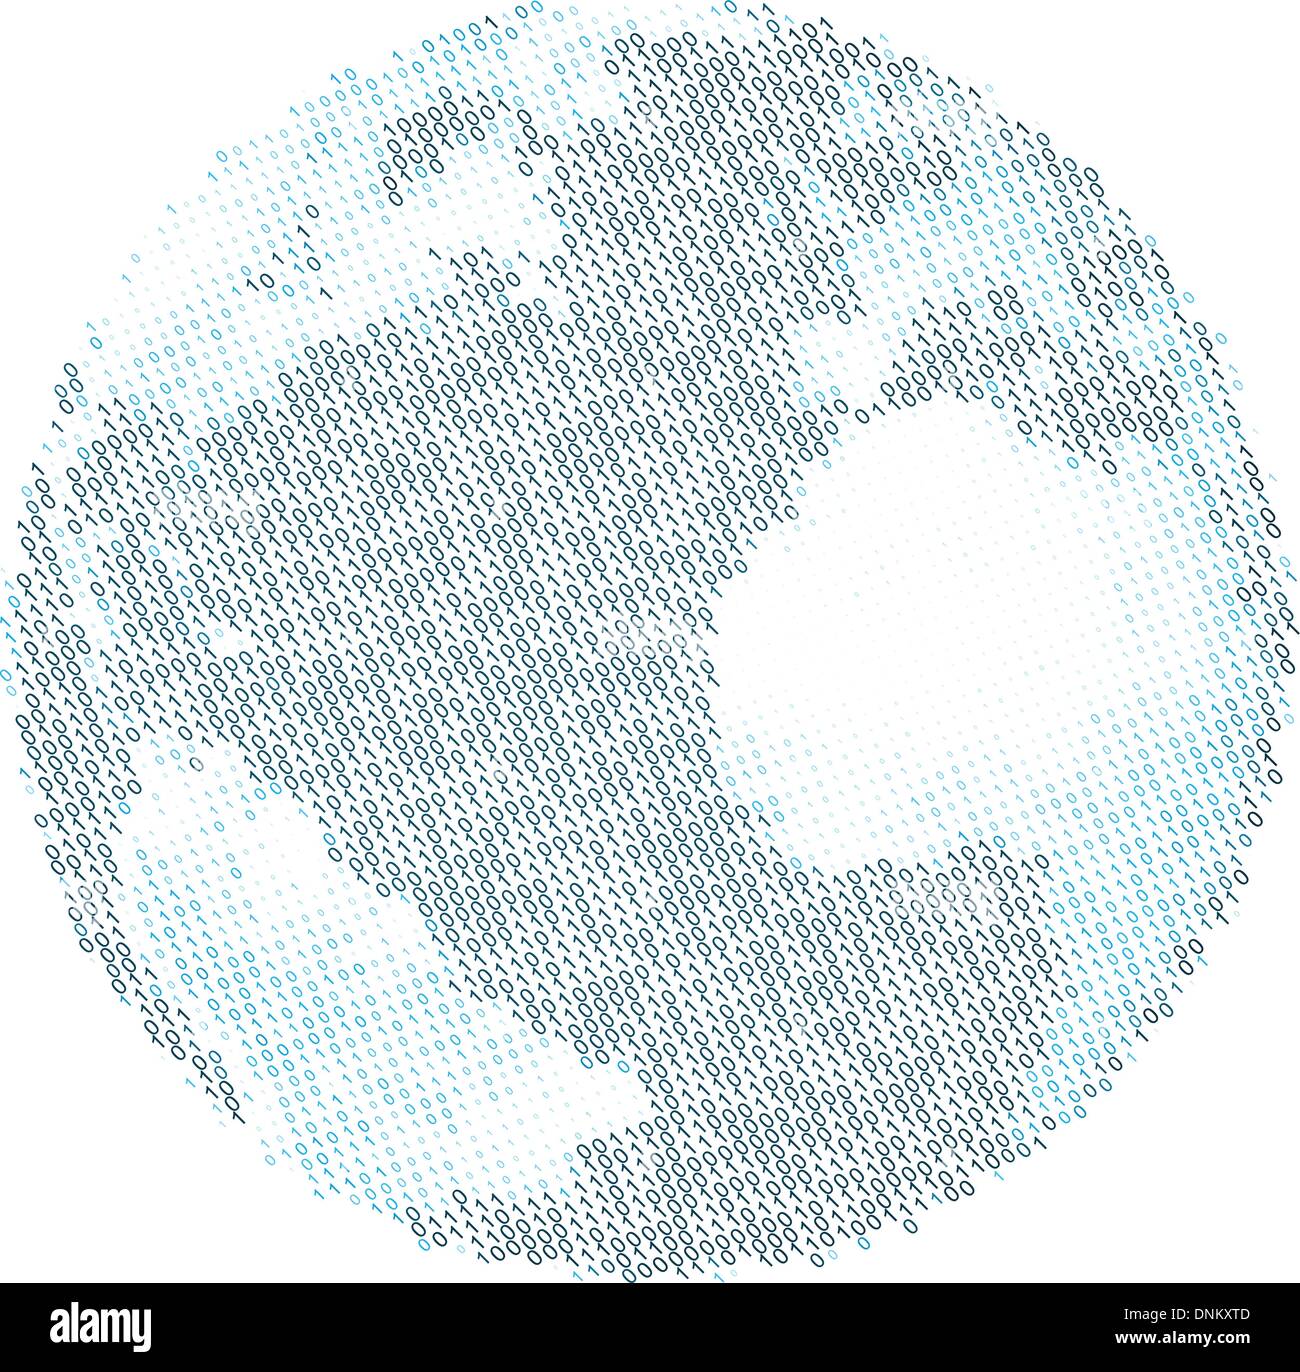 Una illustrazione del mondo, utilizzando il codice binario per raffigurare i continenti e gli oceani Illustrazione Vettoriale